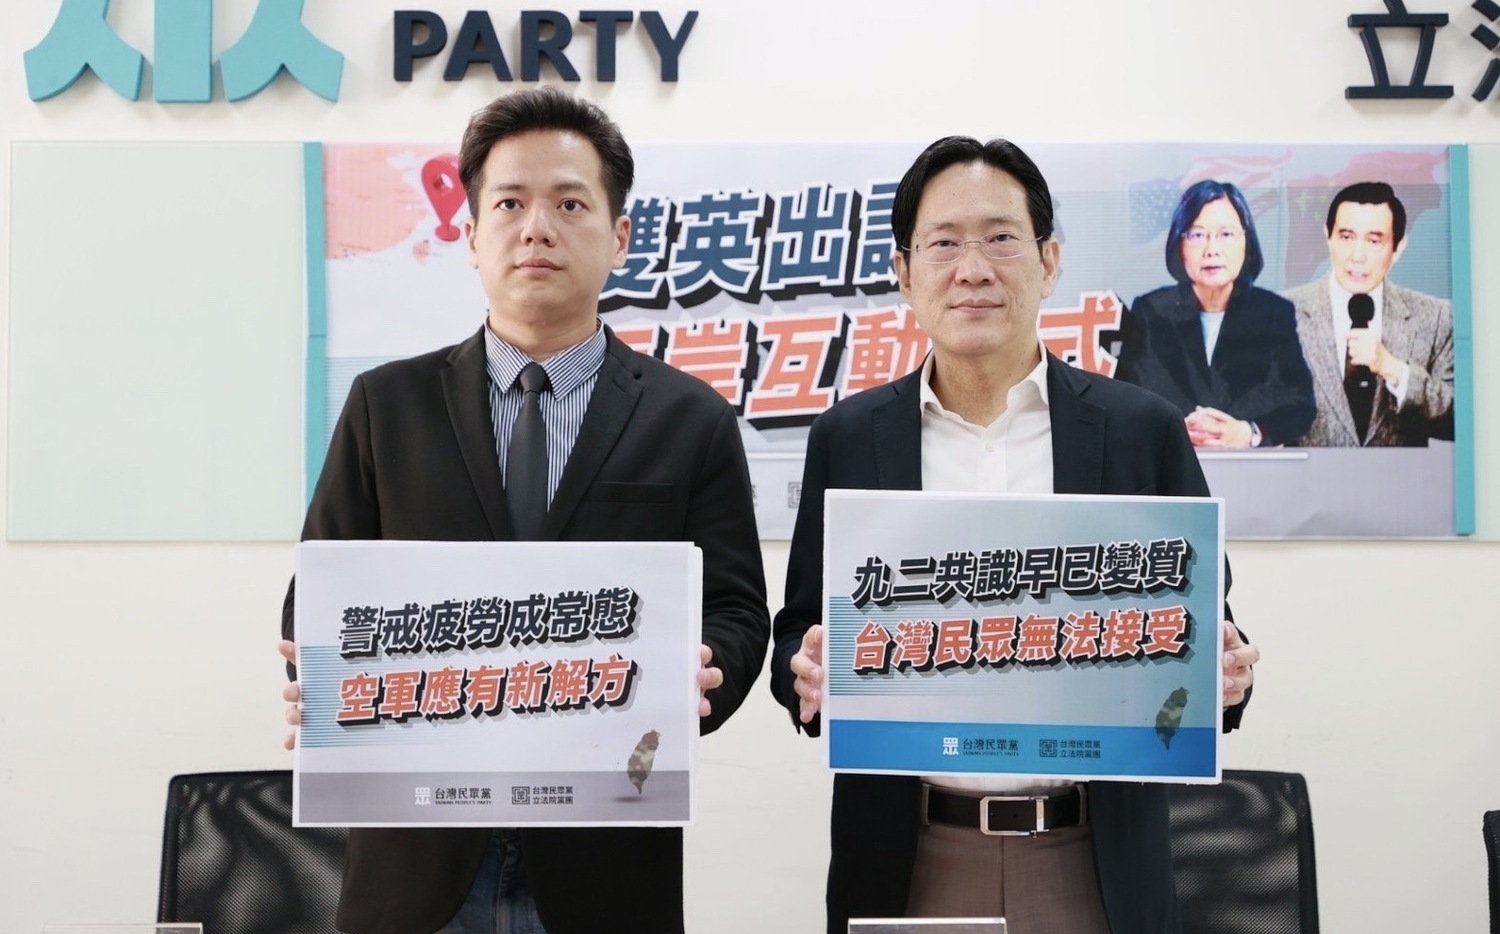 馬英九稱「九二共識又活了」 民眾黨：台灣人普遍難以接受 與現實脫節 |